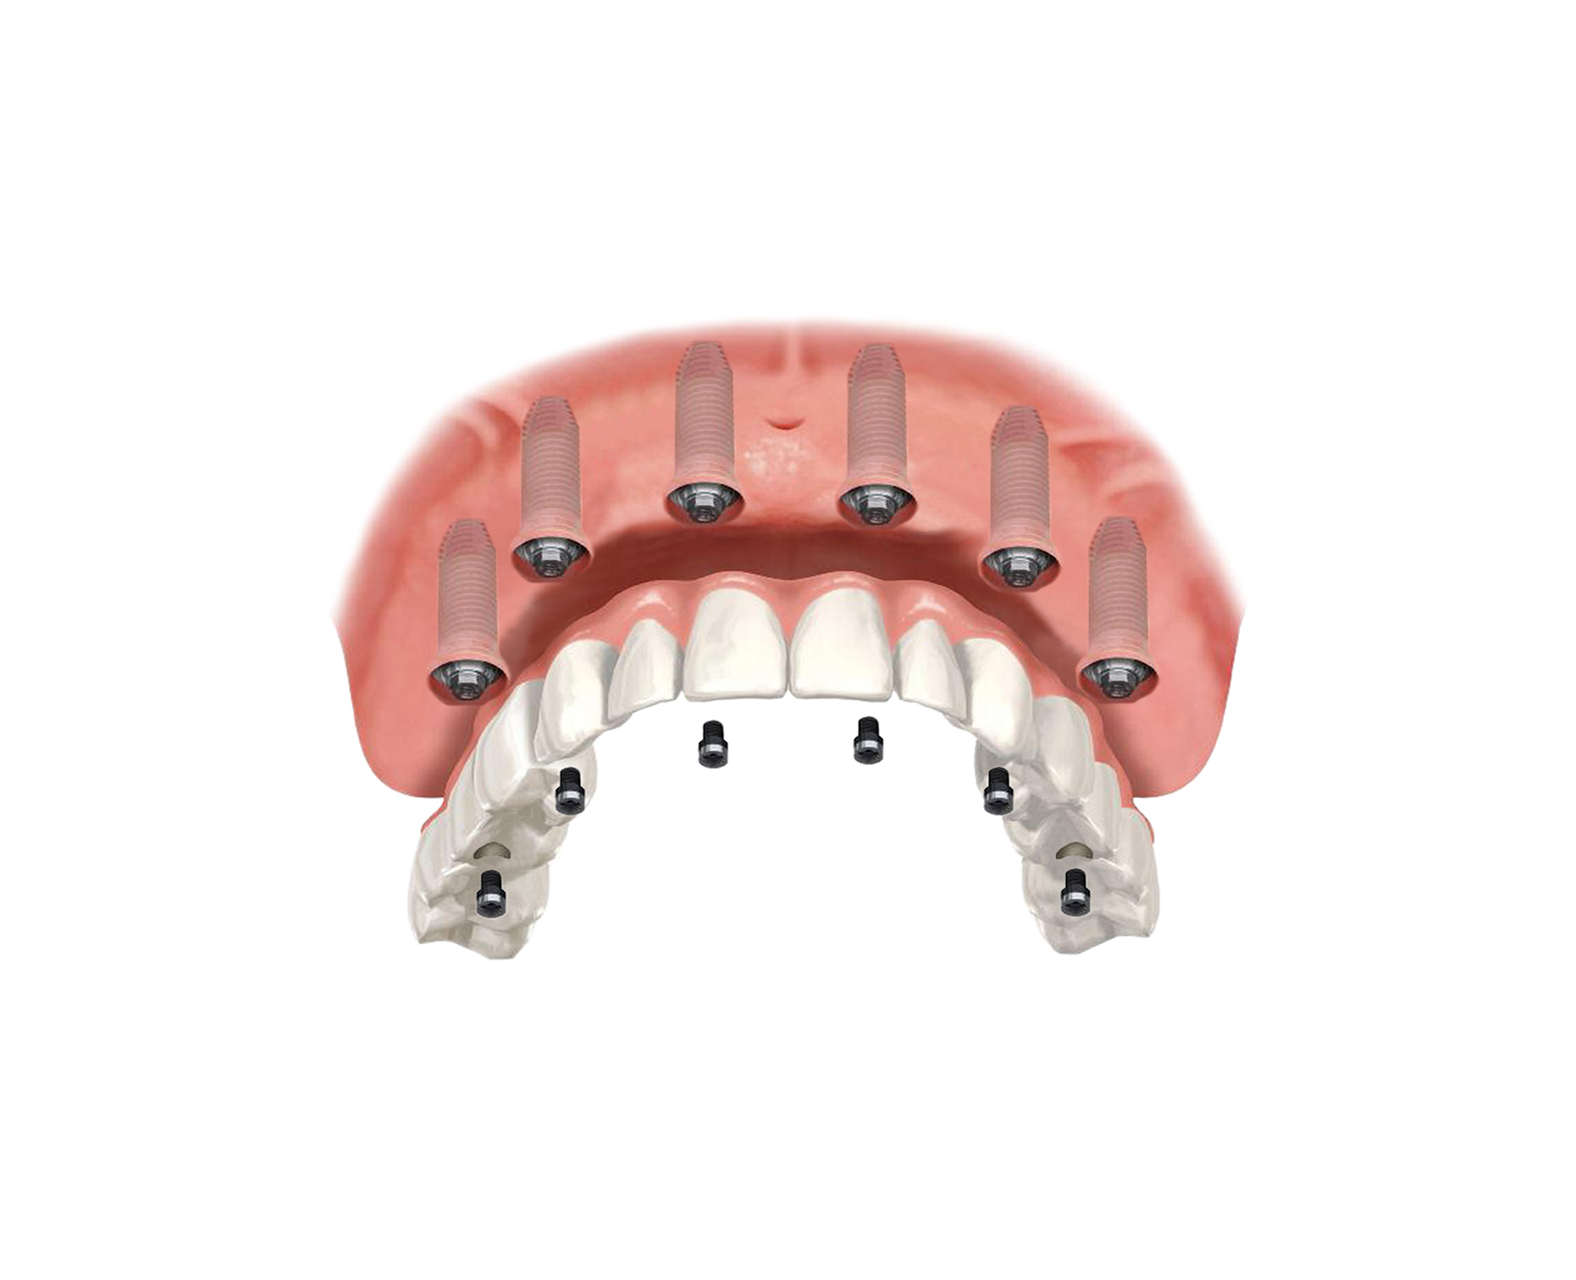 Имплантация зубов all on 6. А23.07. 002.040 Полный съемный протез. Несъёмный мостовидный протез челюсти. Имплантация челюсти на 6 имплантах.